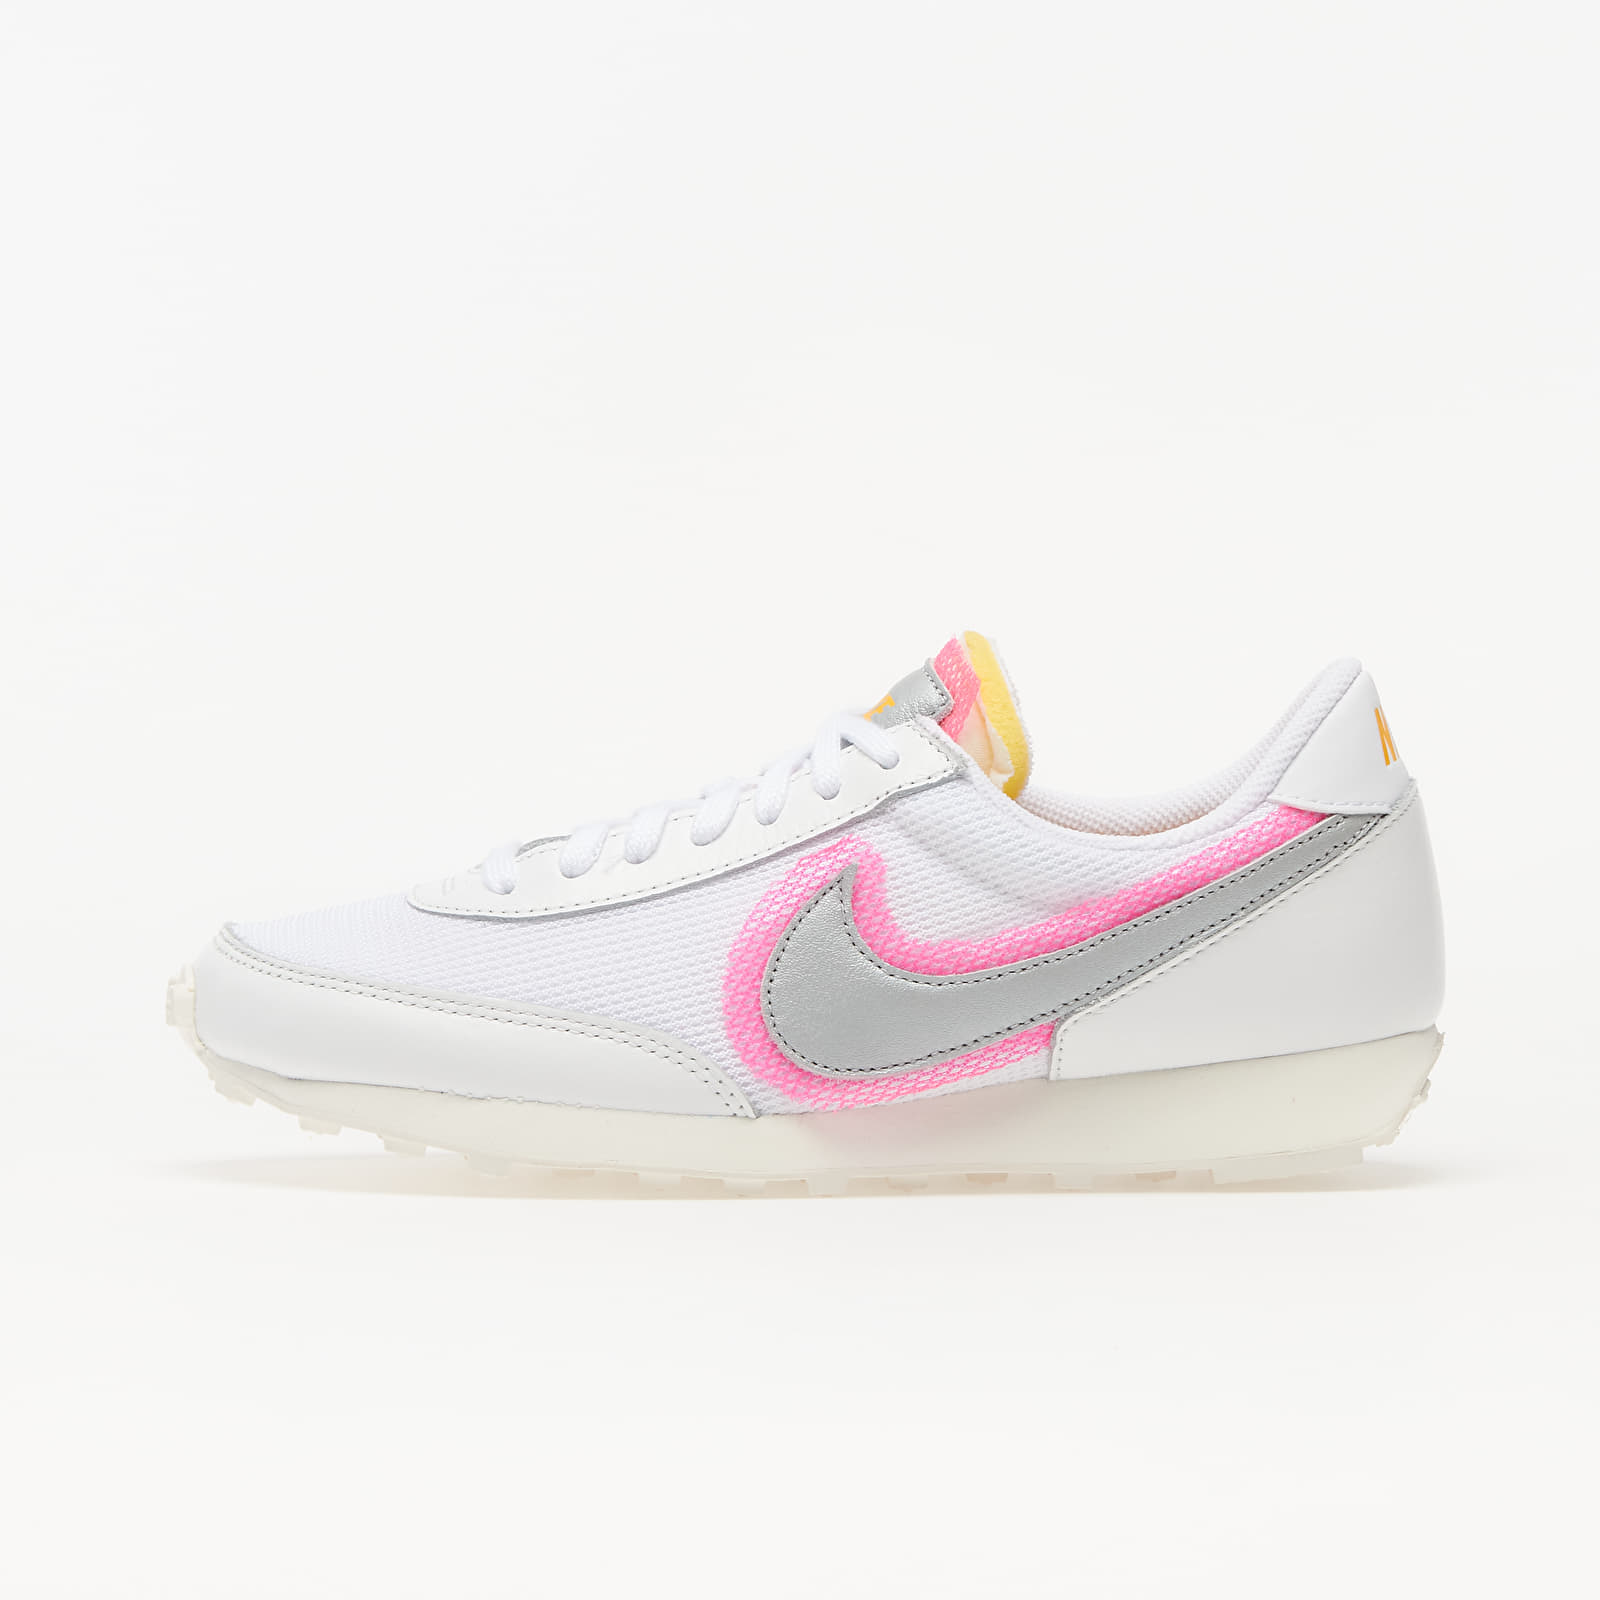 Încălțăminte și sneakerși pentru femei Nike Daybreak White/ Metallic Silver-Hyper Pink